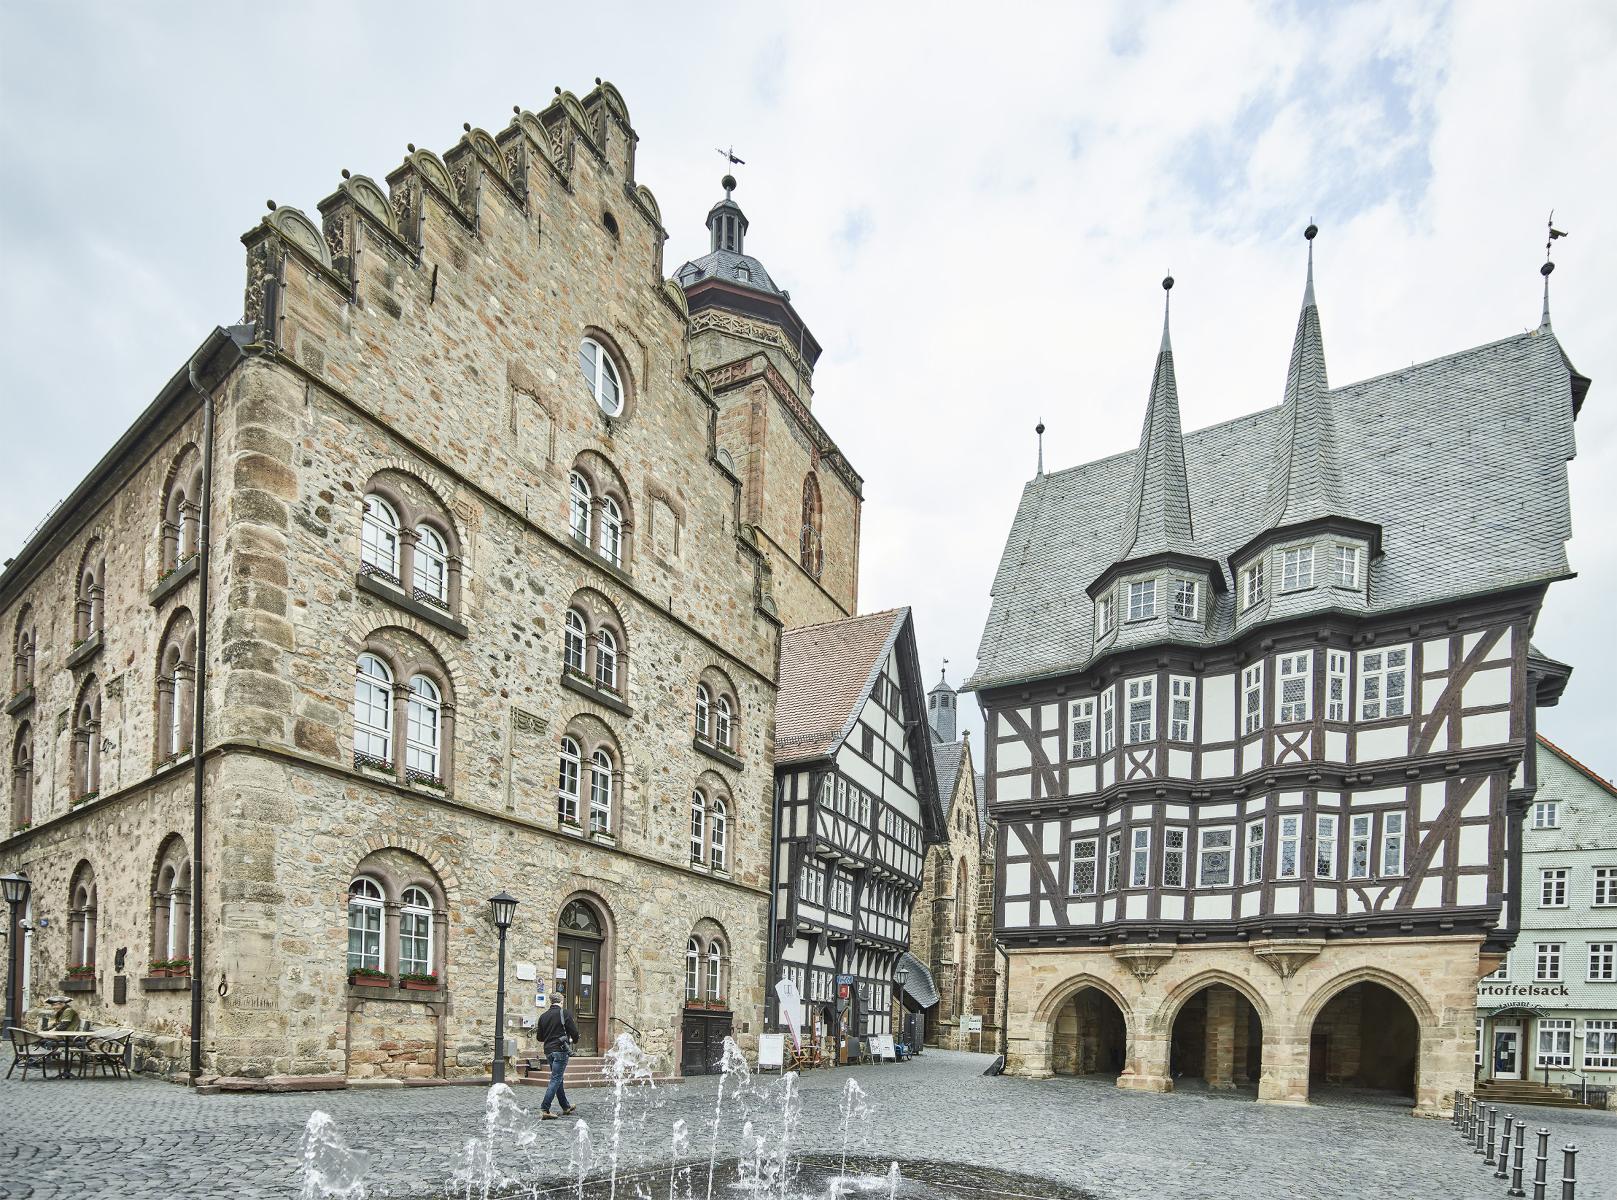 Über 400 Fachwerkhäuser aus sieben Jahrhunderten dominieren das Altstadtbild einer der schönsten Kleinstädte Deutschlands. Idyllische Plätze und verwinkelte Gassen laden ein zum Entdecken, Verweilen und Erleben. Allen voran der Marktplatz mit dem weltbekannten Rathaus. Vielfältige Themen- und ...